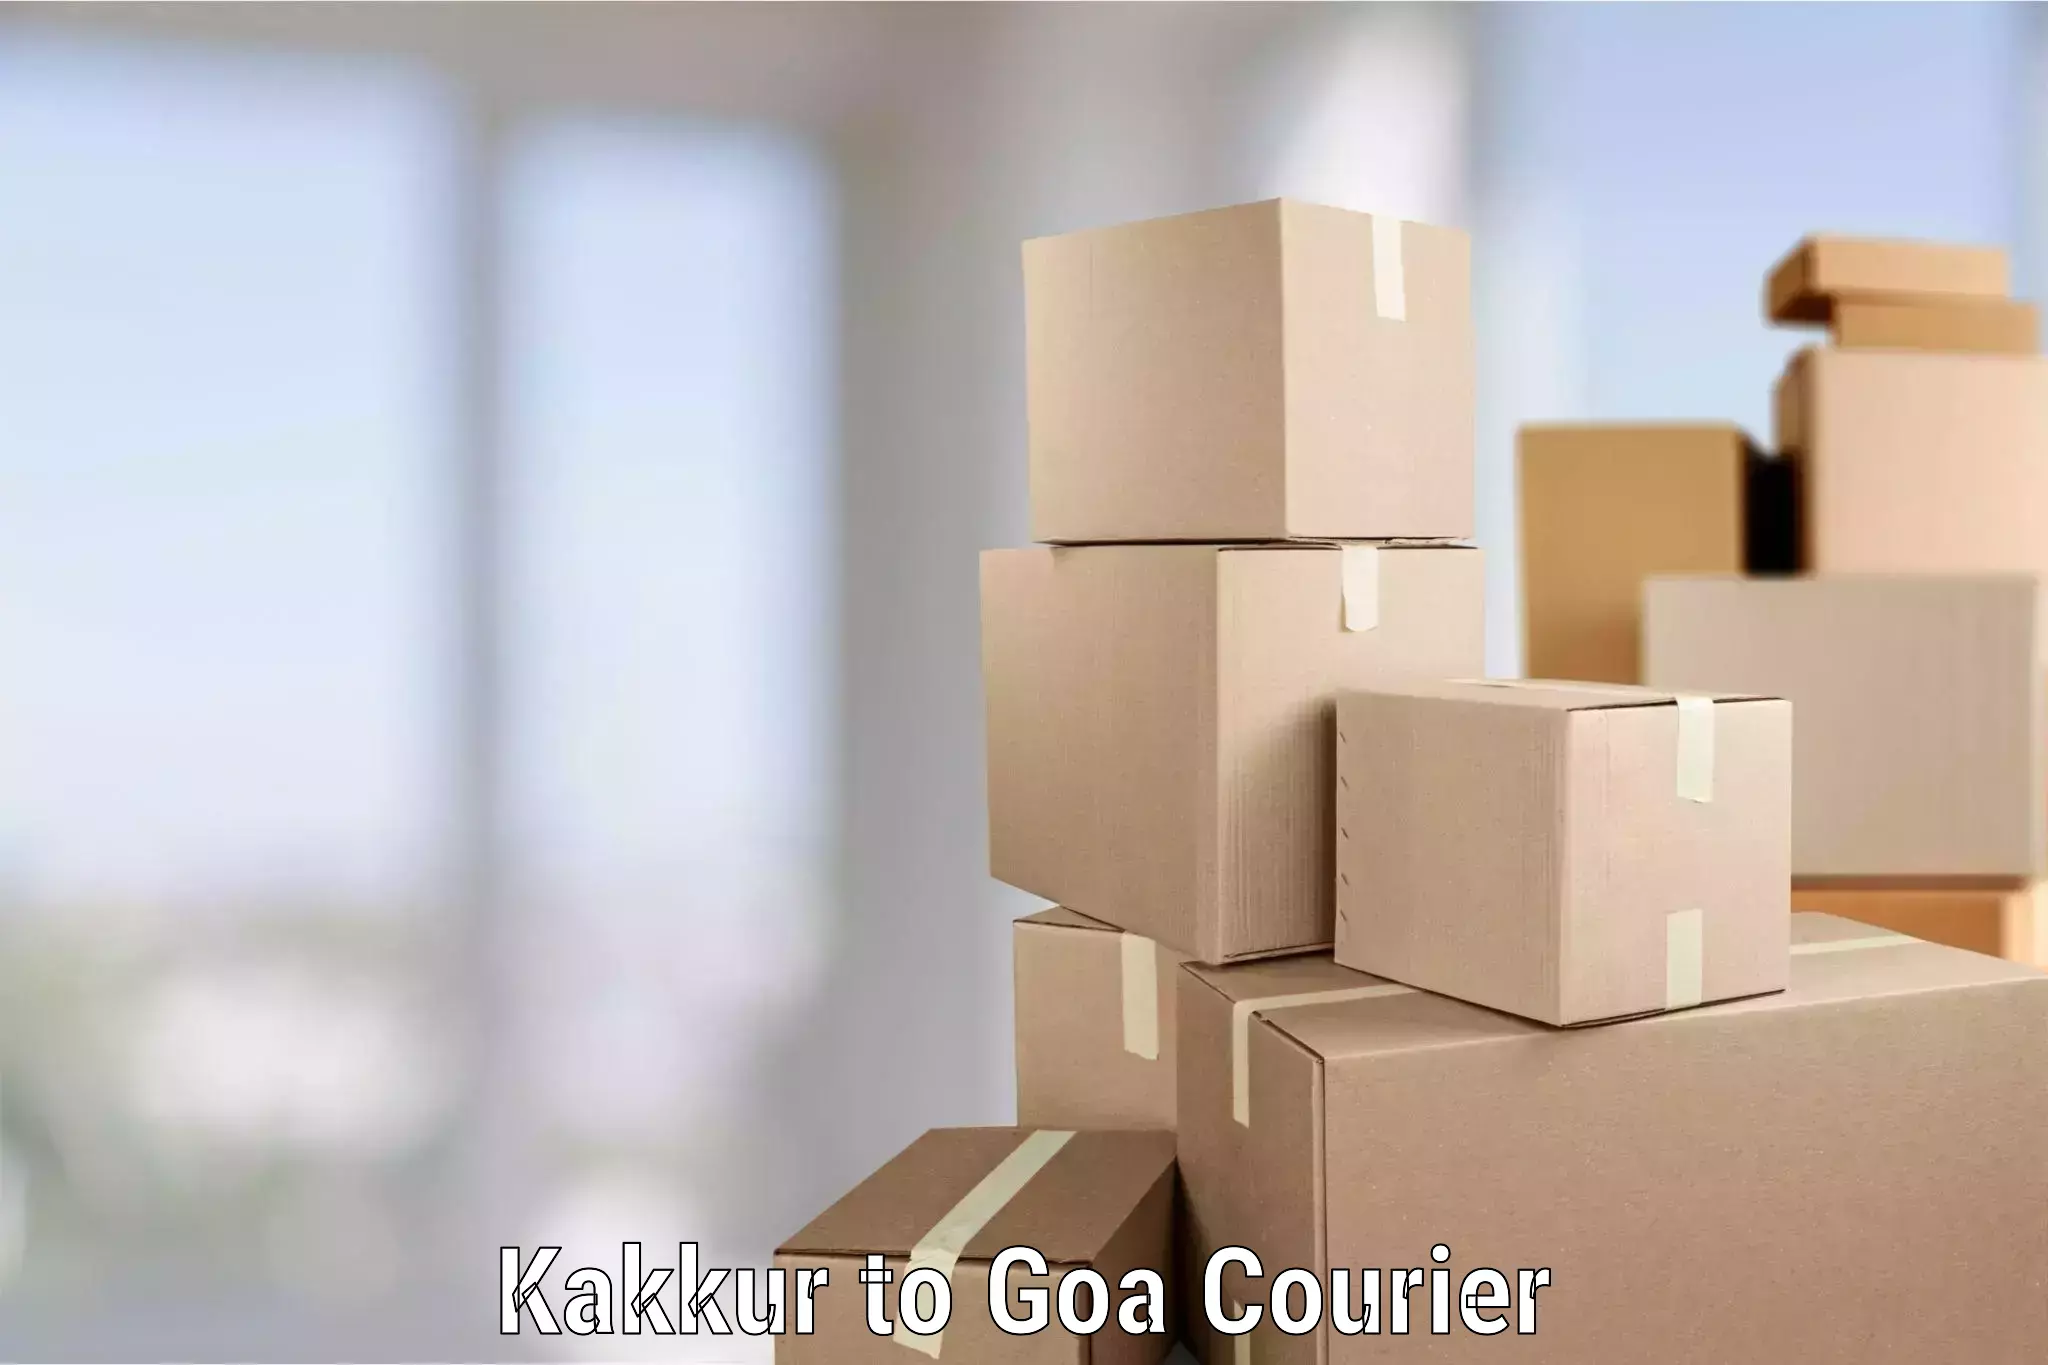 Reliable movers Kakkur to Goa